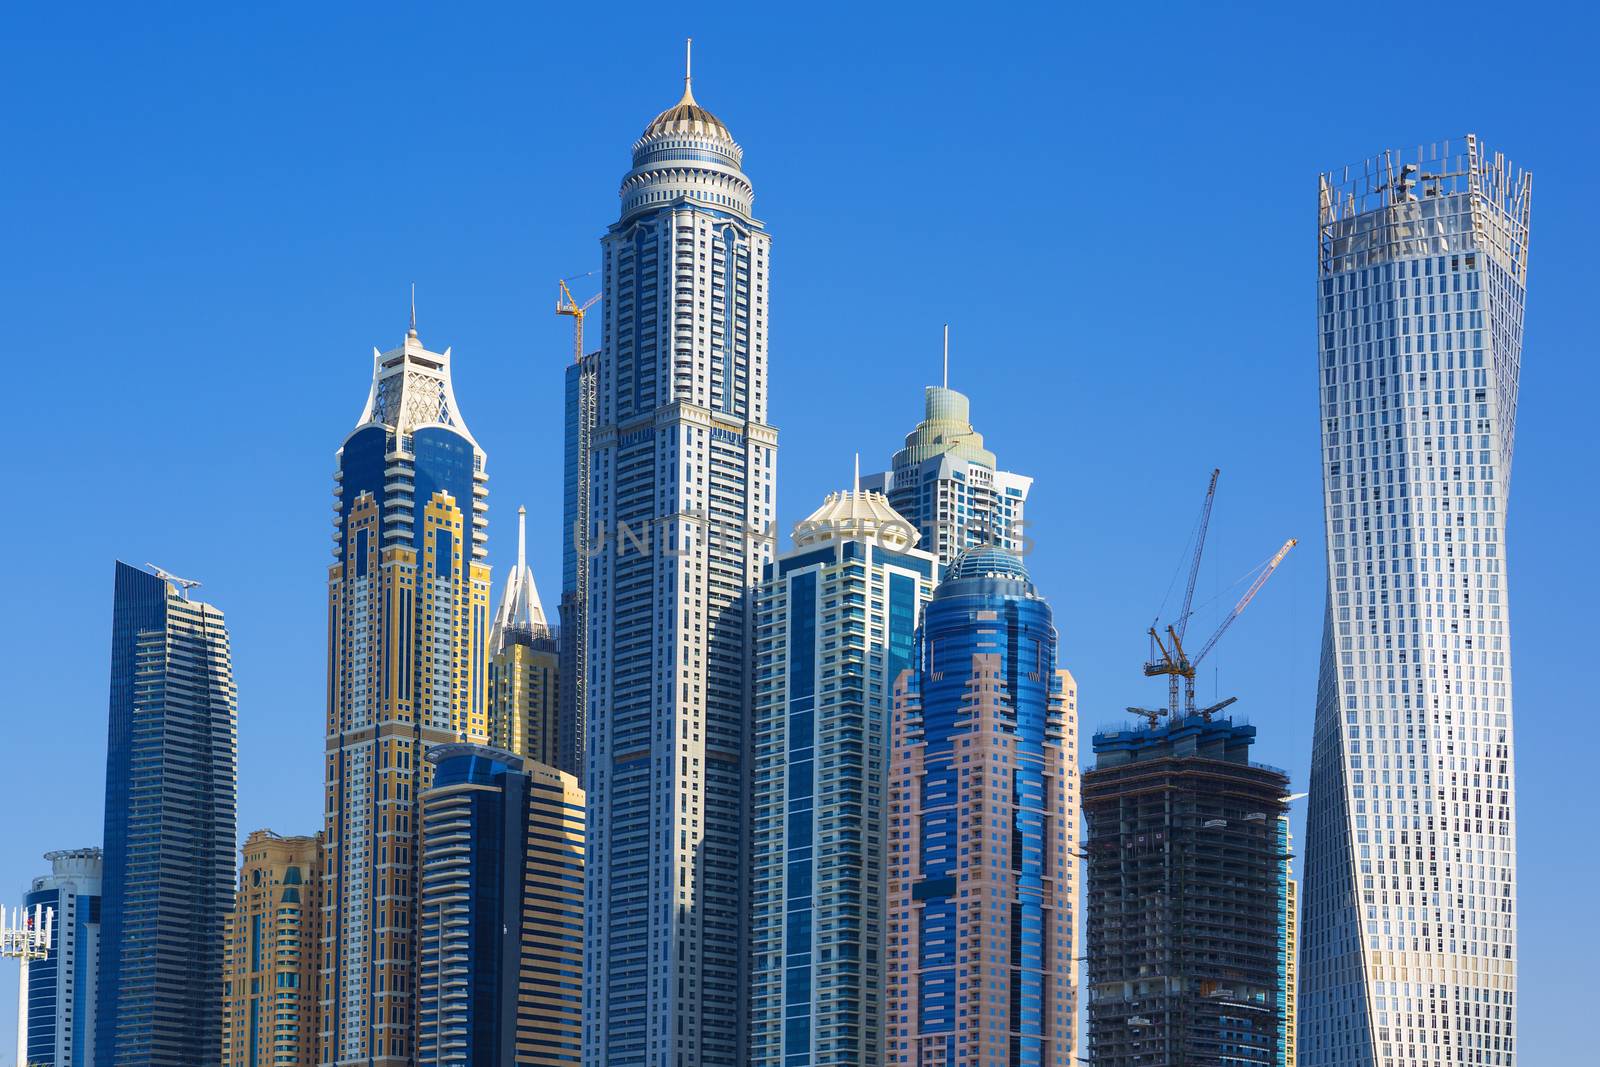 Skyscrapers at jumeirah beach in Dubai. UAE 